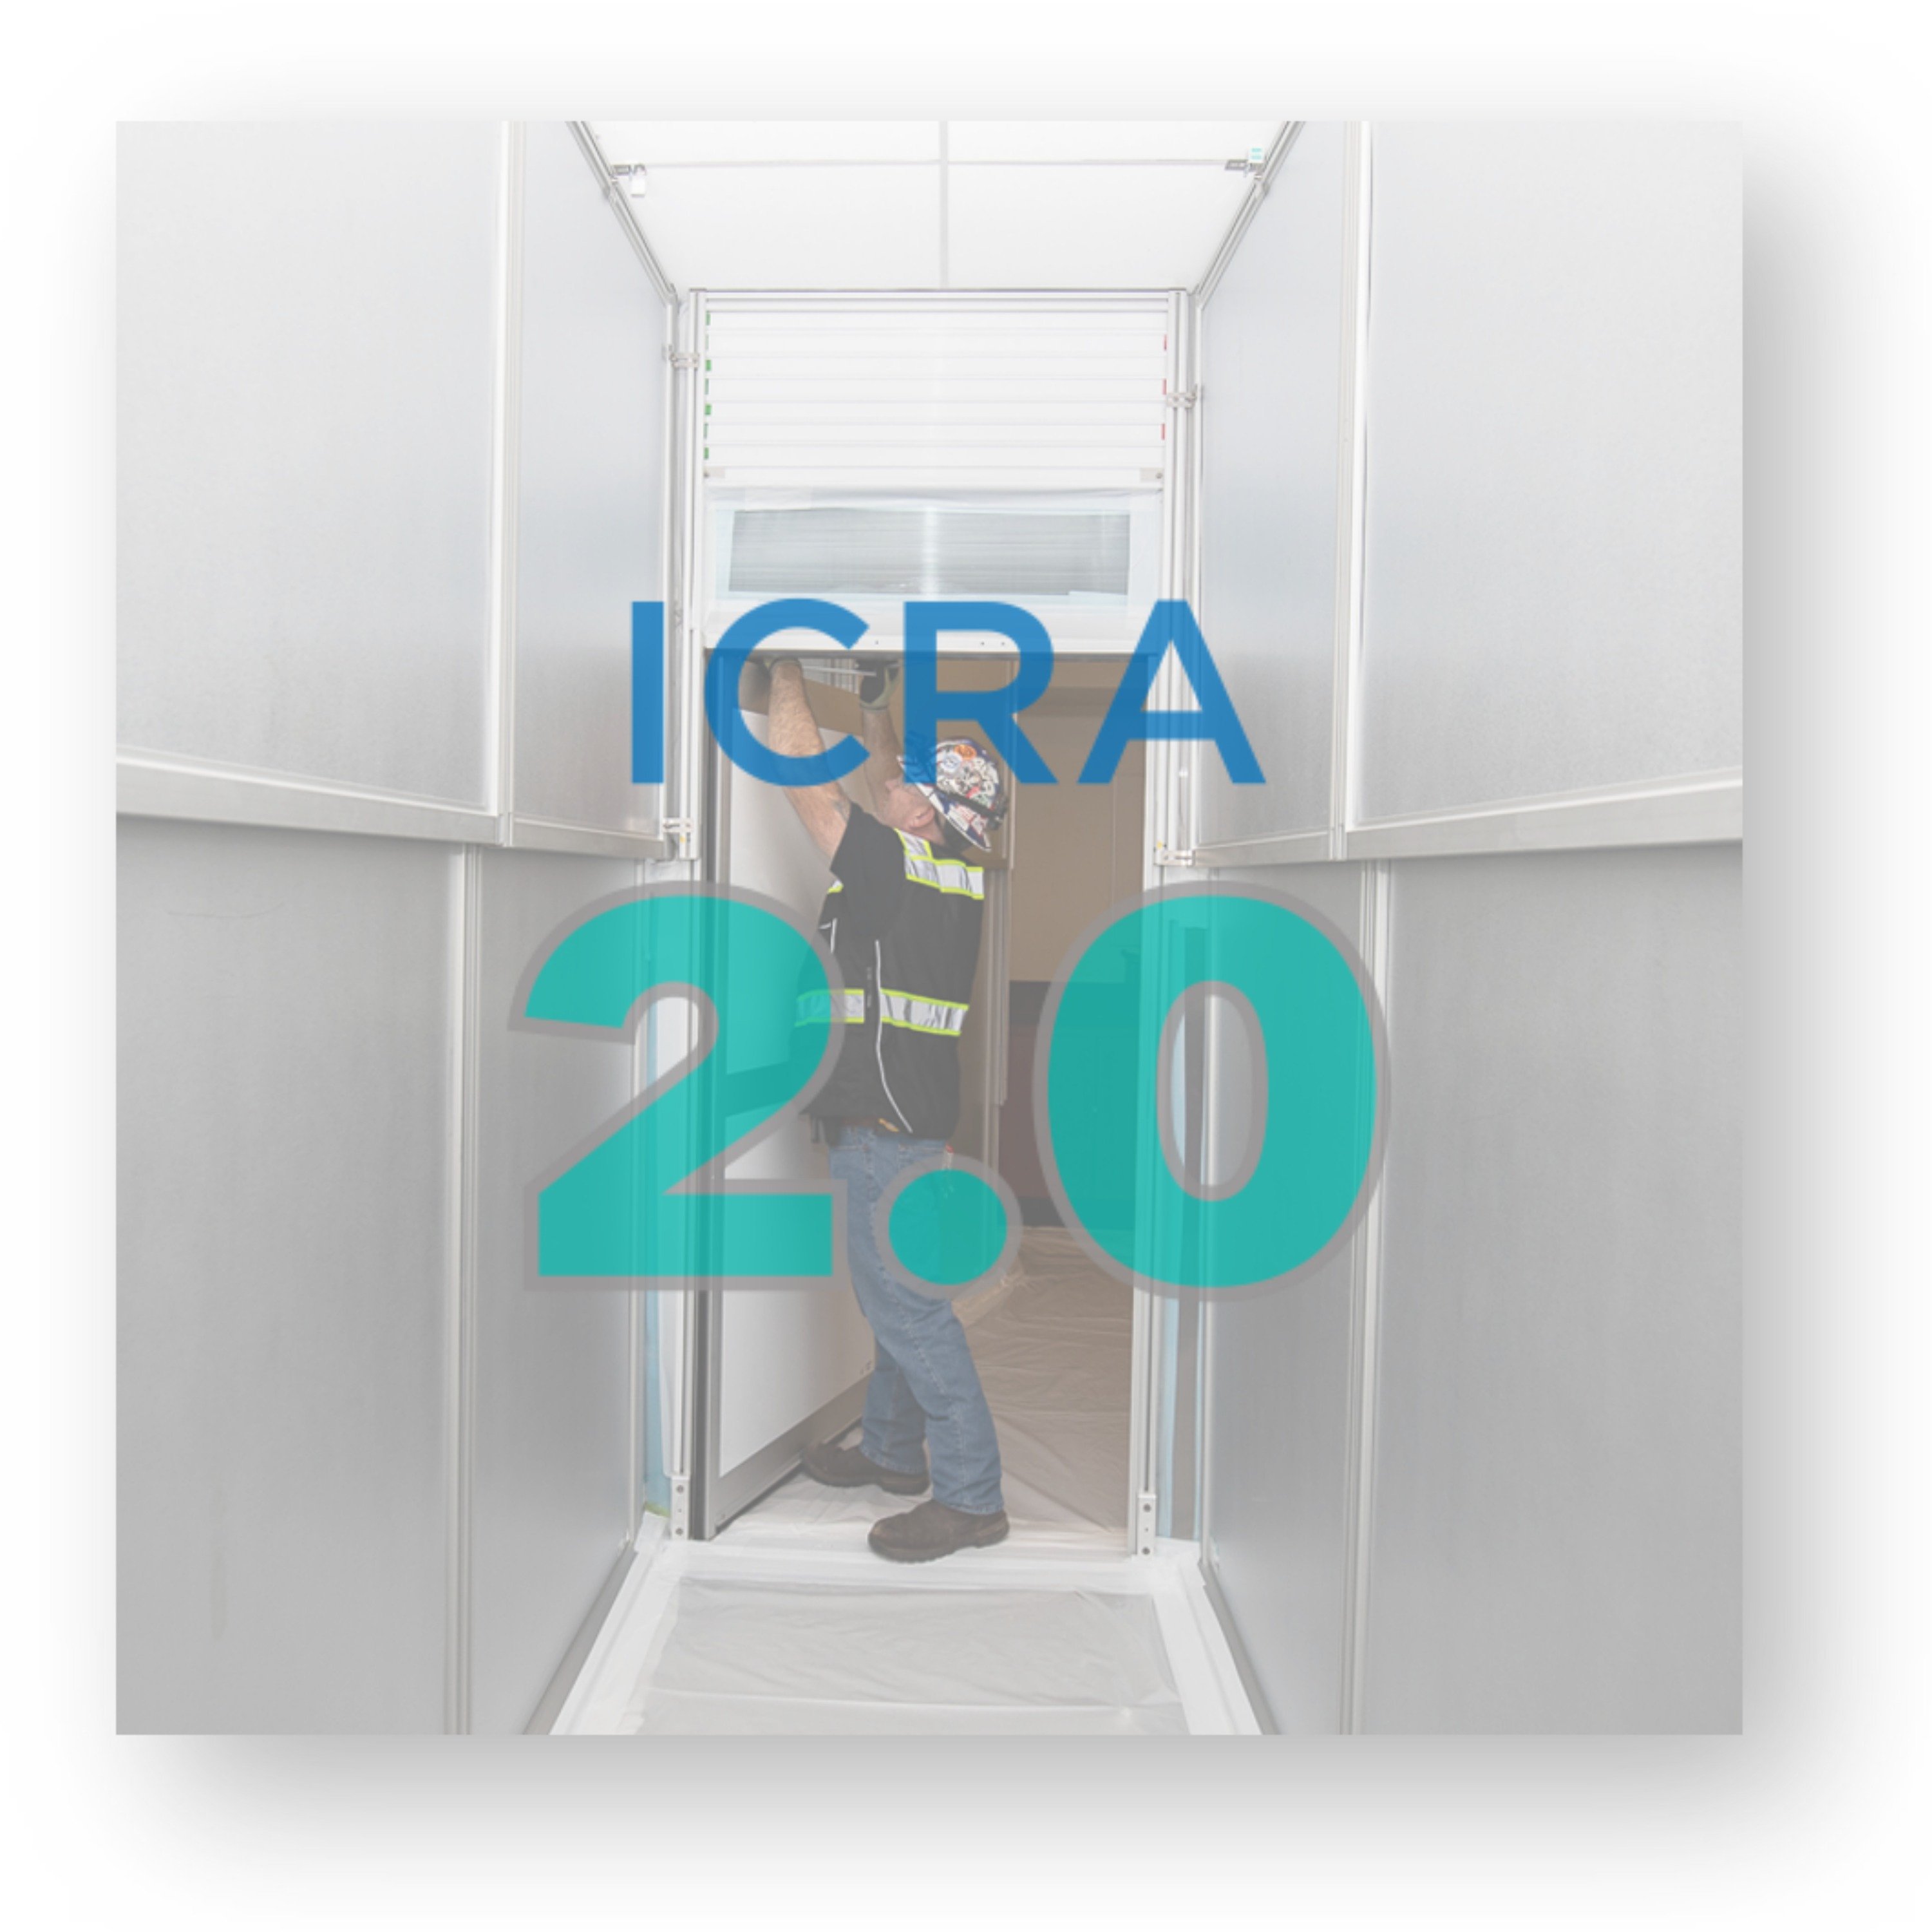 ICRA 2.0